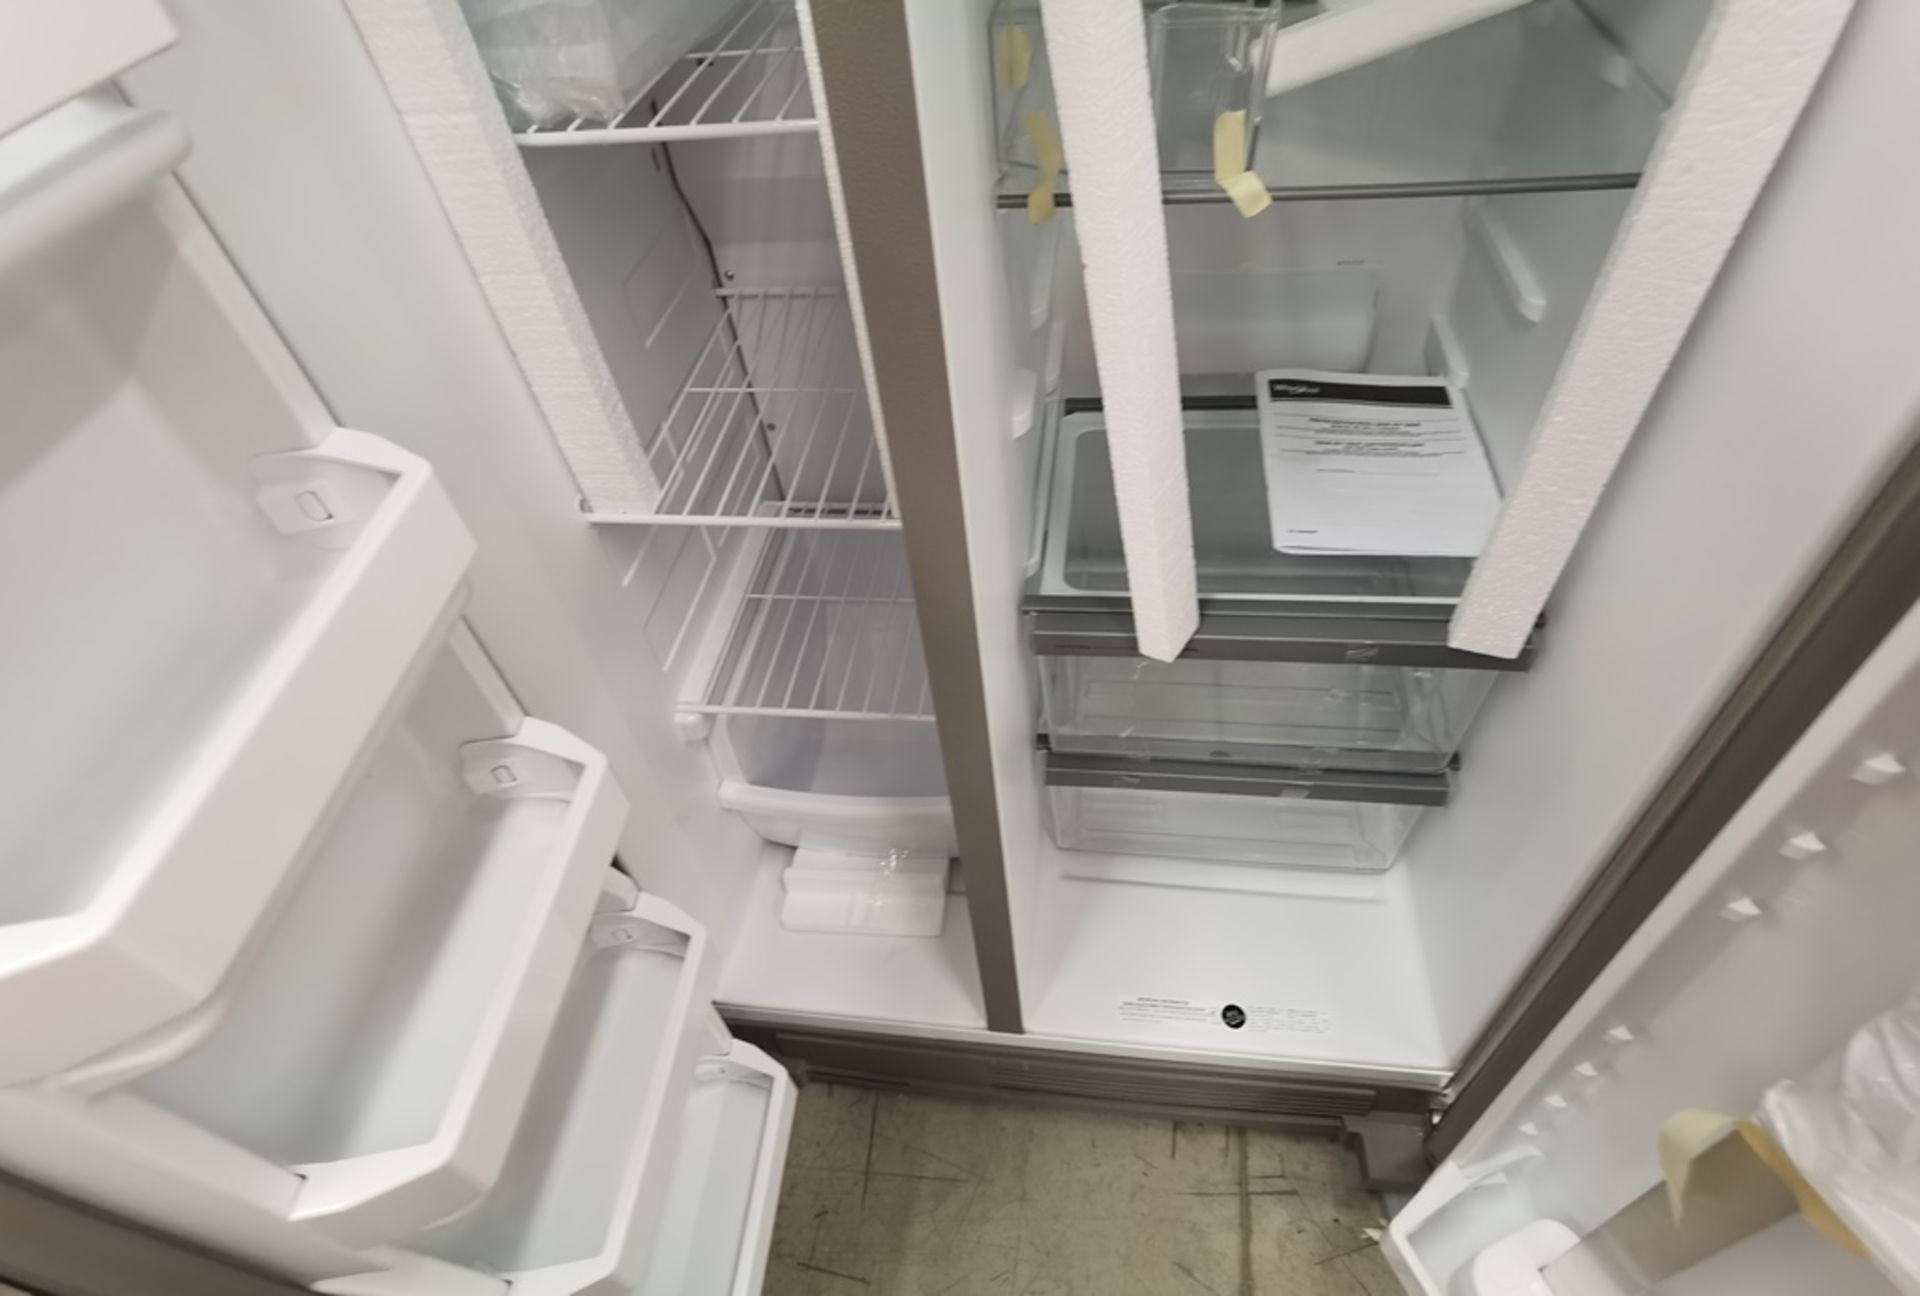 Lote De 2 Refrigeradores Contiene: 1 Refrigerador Marca LG, Modelo VT40BP, Serie 112MRTT1R457, Colo - Image 4 of 14